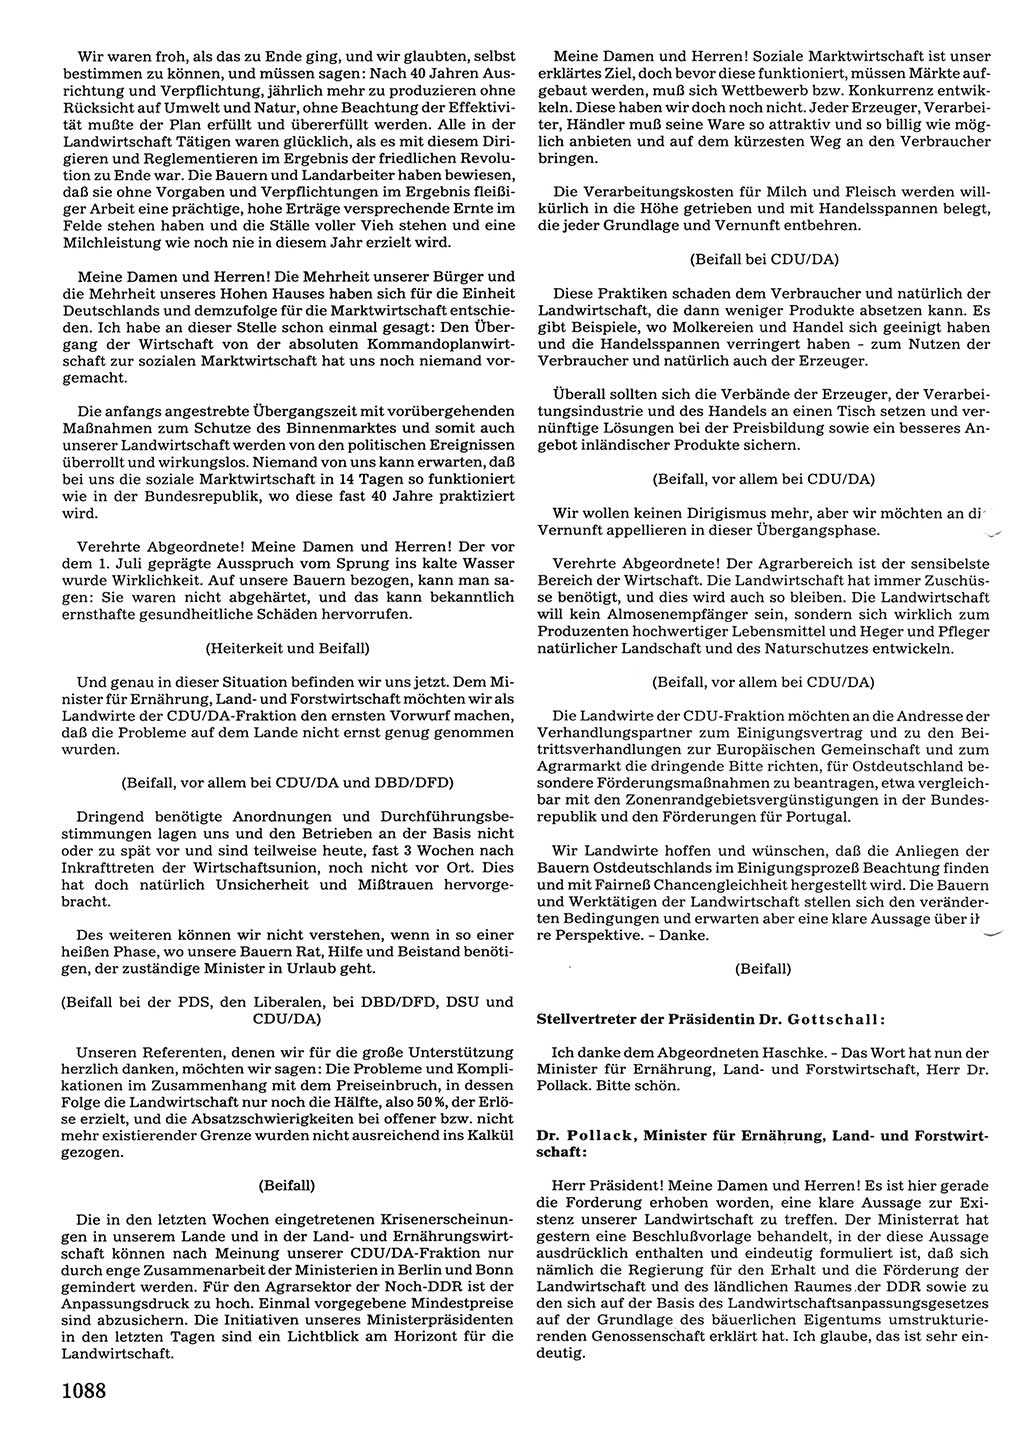 Tagungen der Volkskammer (VK) der Deutschen Demokratischen Republik (DDR), 10. Wahlperiode 1990, Seite 1088 (VK. DDR 10. WP. 1990, Prot. Tg. 1-38, 5.4.-2.10.1990, S. 1088)